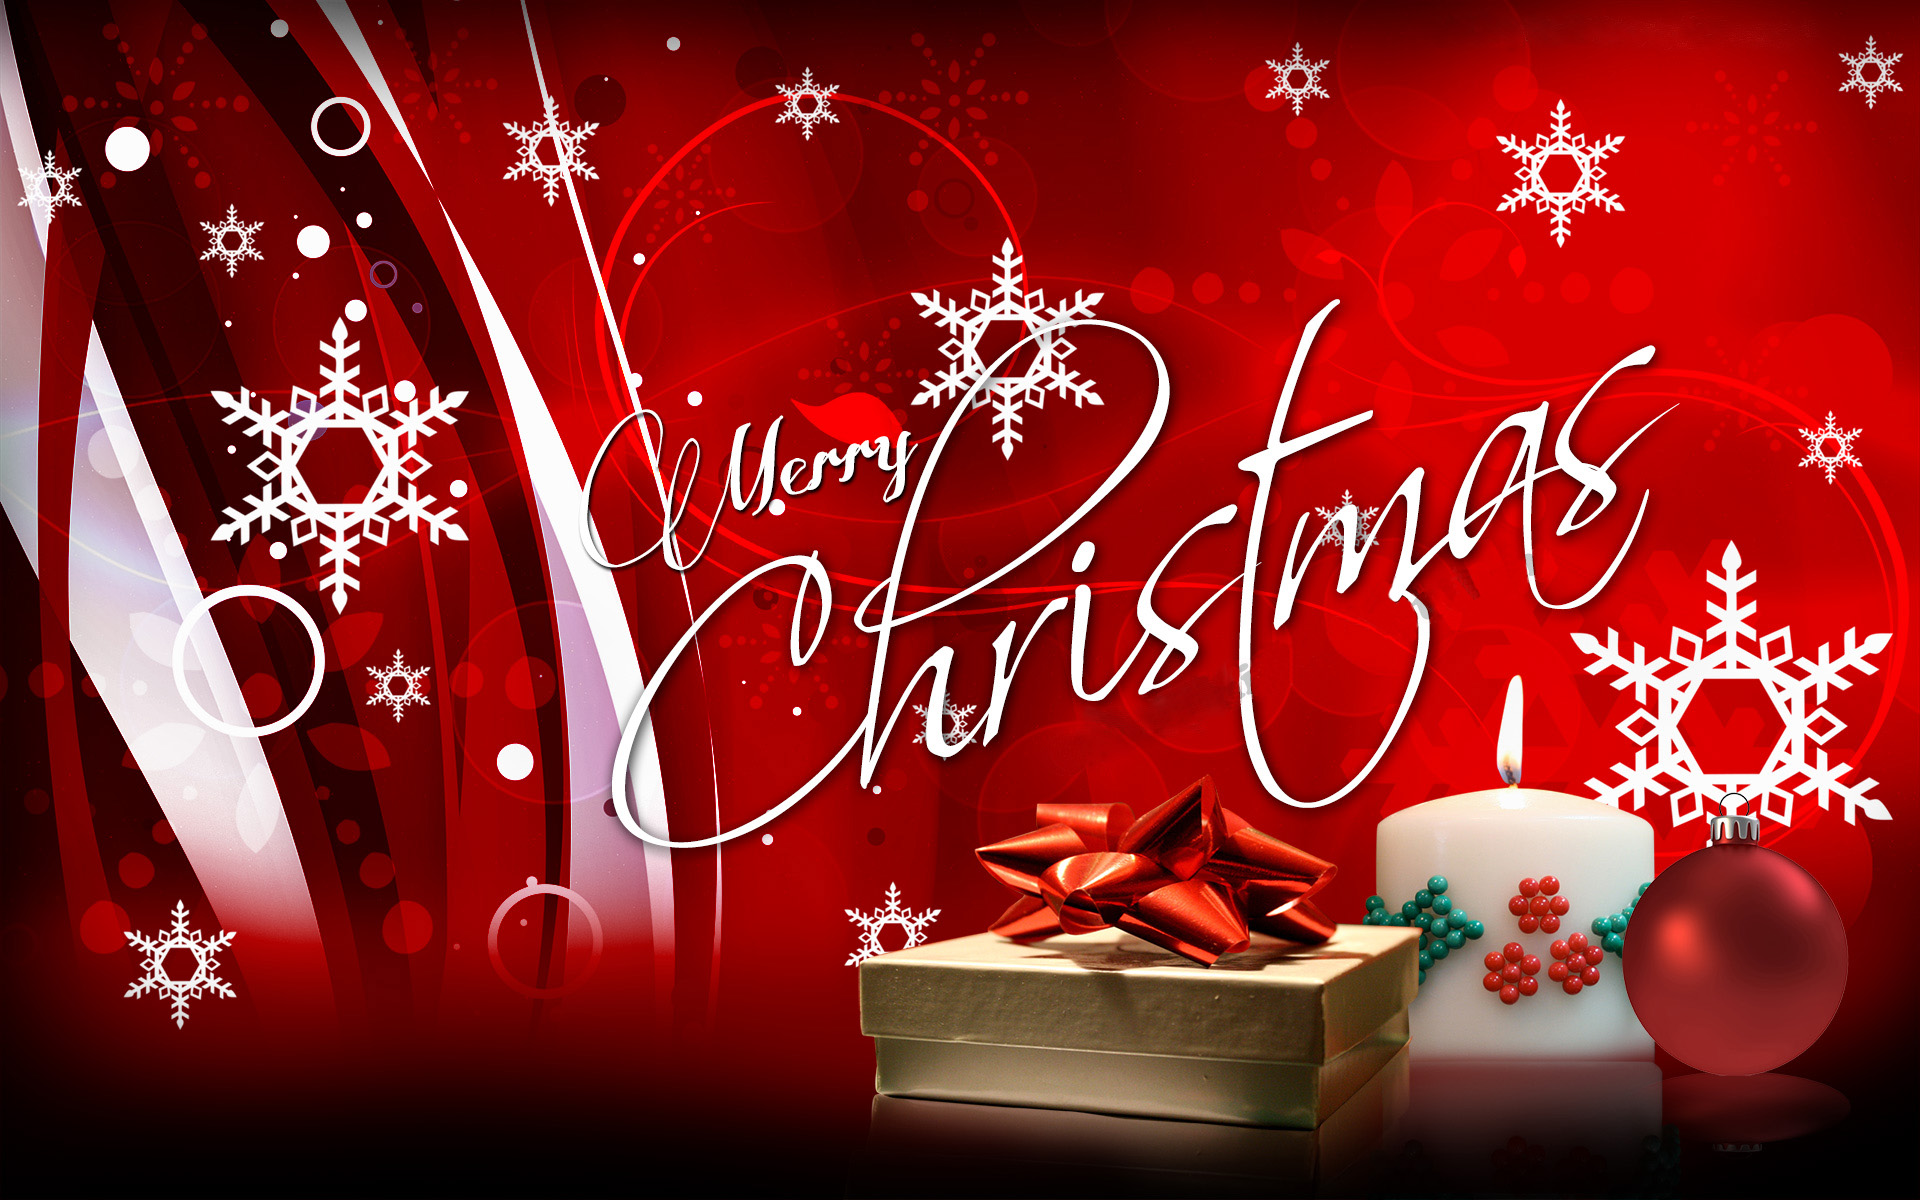 Merry Christmas Greetings Wishes Image Desktop Backgroud Wallpaper